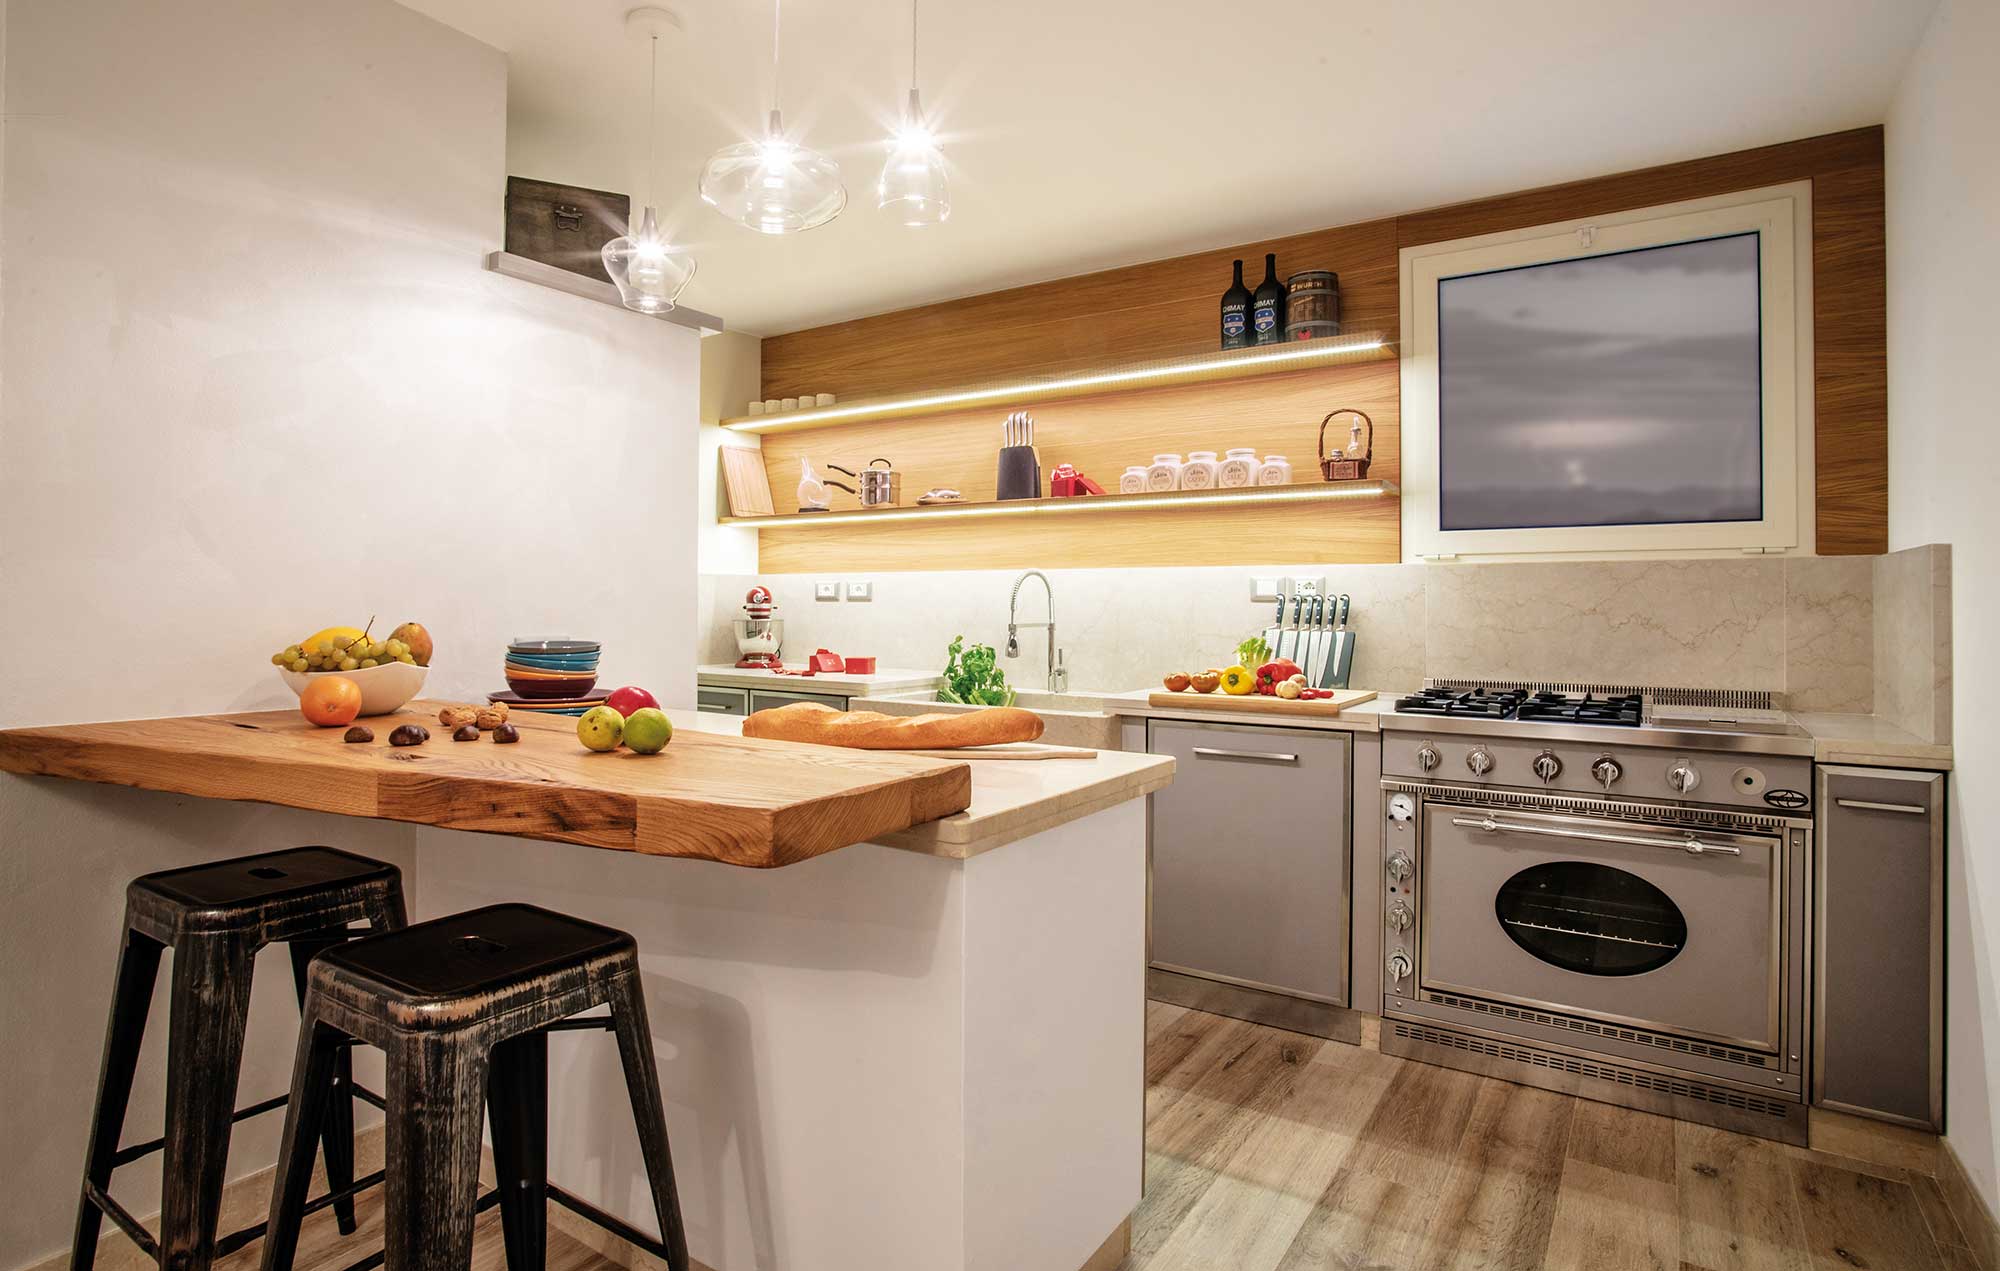 anteprima cucina moderna su misura ante in legno verniciato profili inox gruppo cottura j corradi